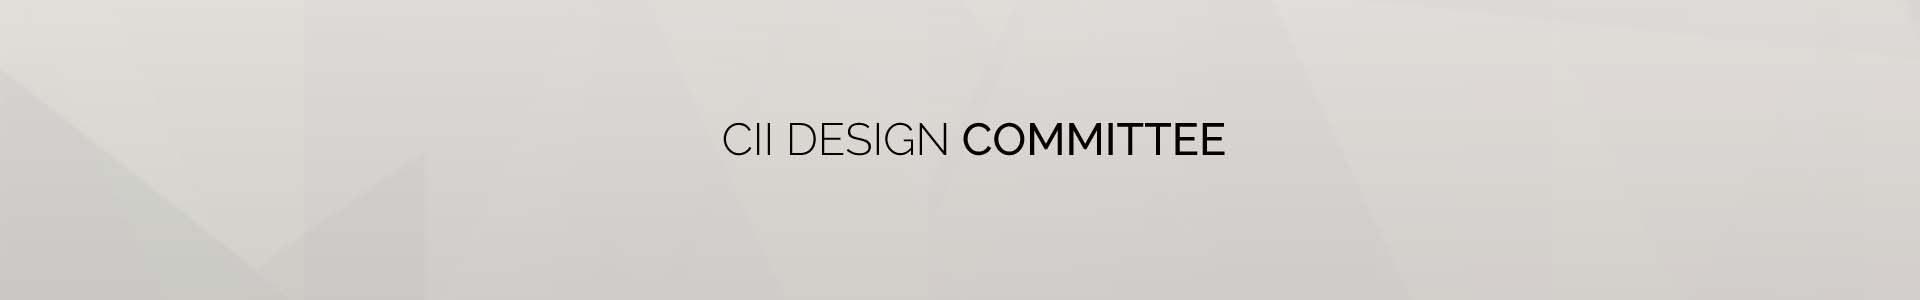 cii-design-committee